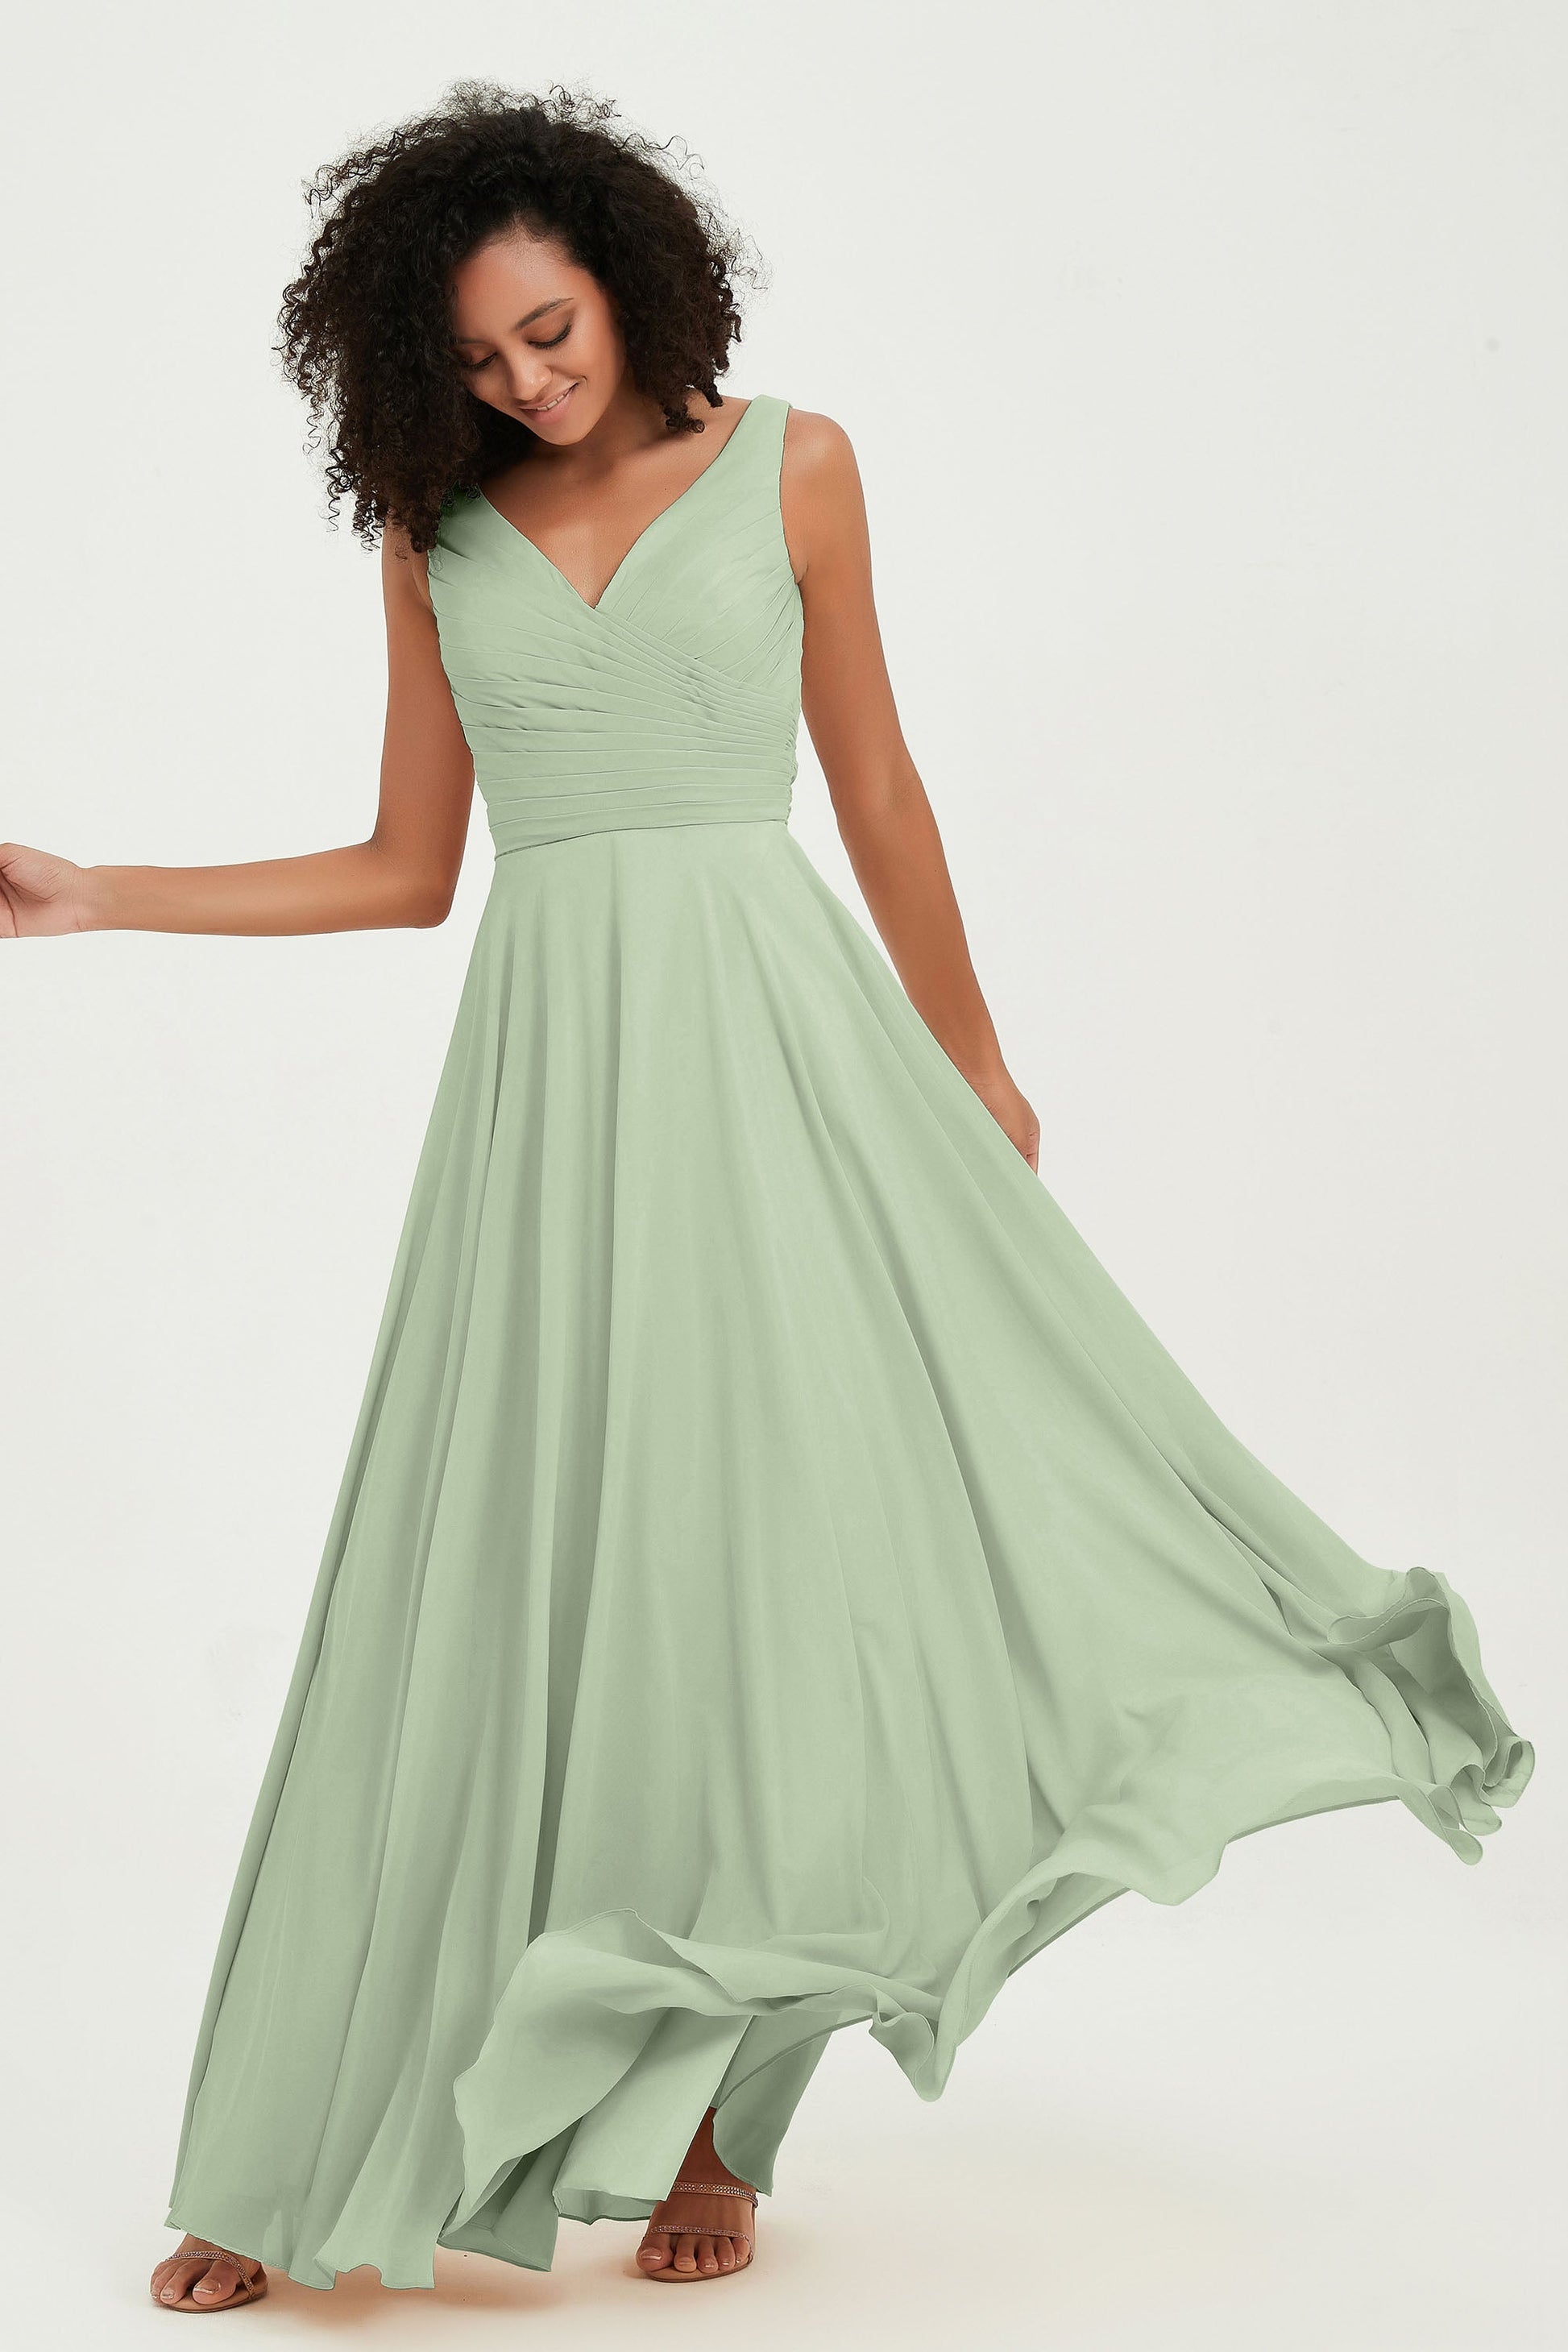 Lucky Brand 100% Linen Sage Green Dress Sleeveless Tank V-Neck